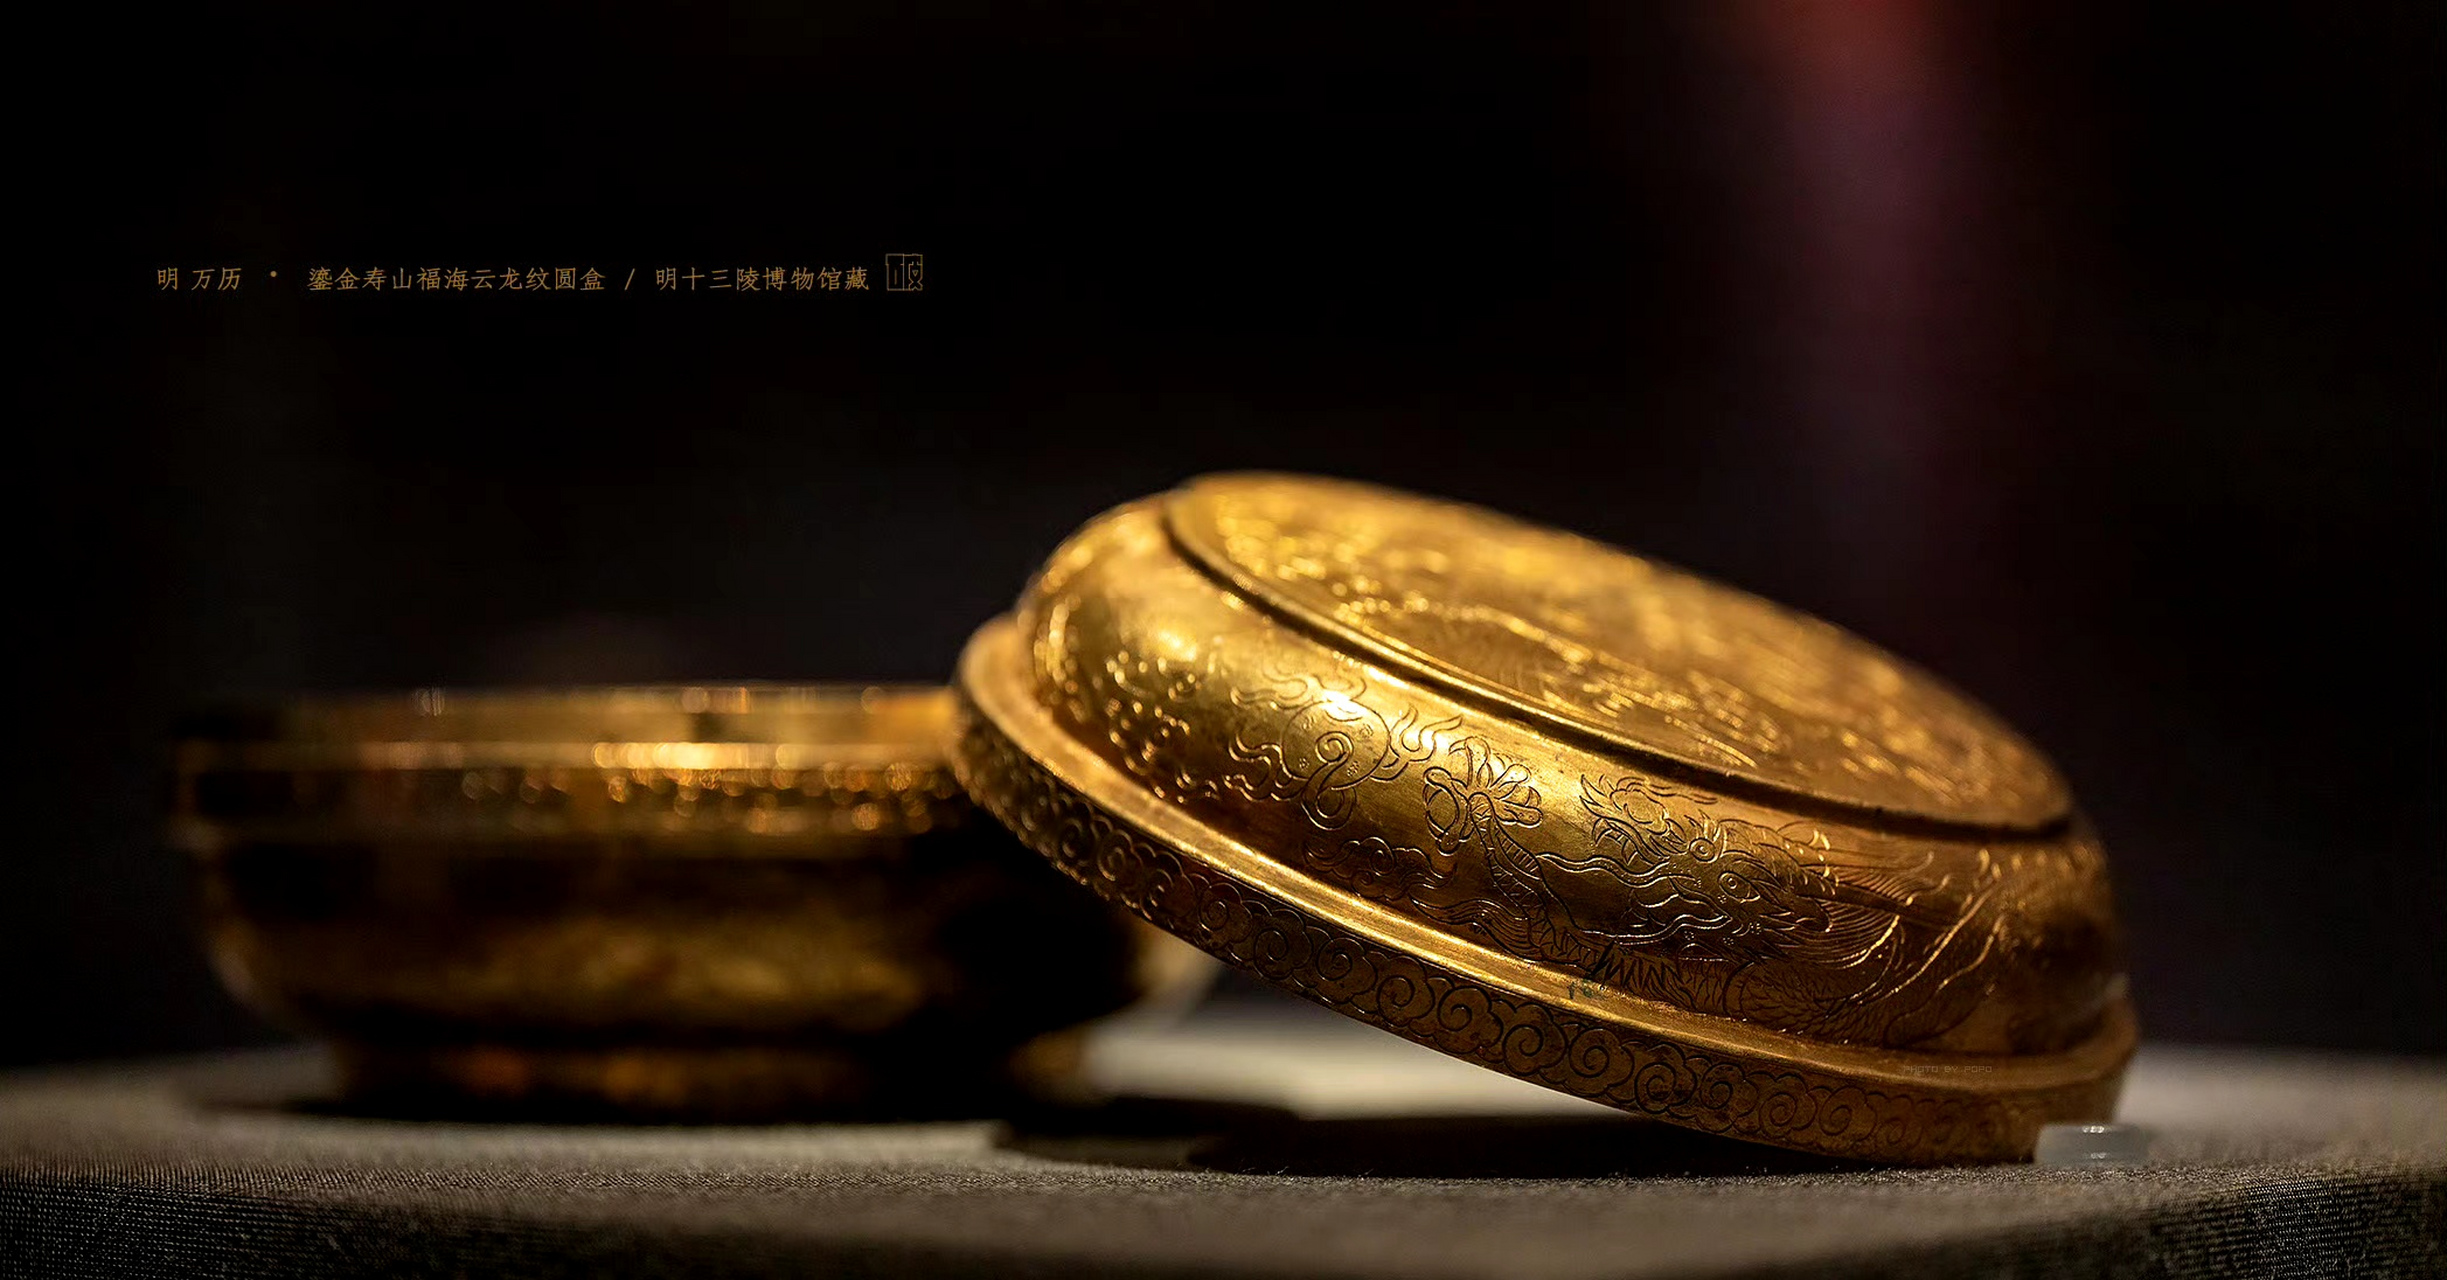 明十三陵博物馆收藏的鎏金寿山福海云龙纹圆盒 ,制作时间为明朝万历年